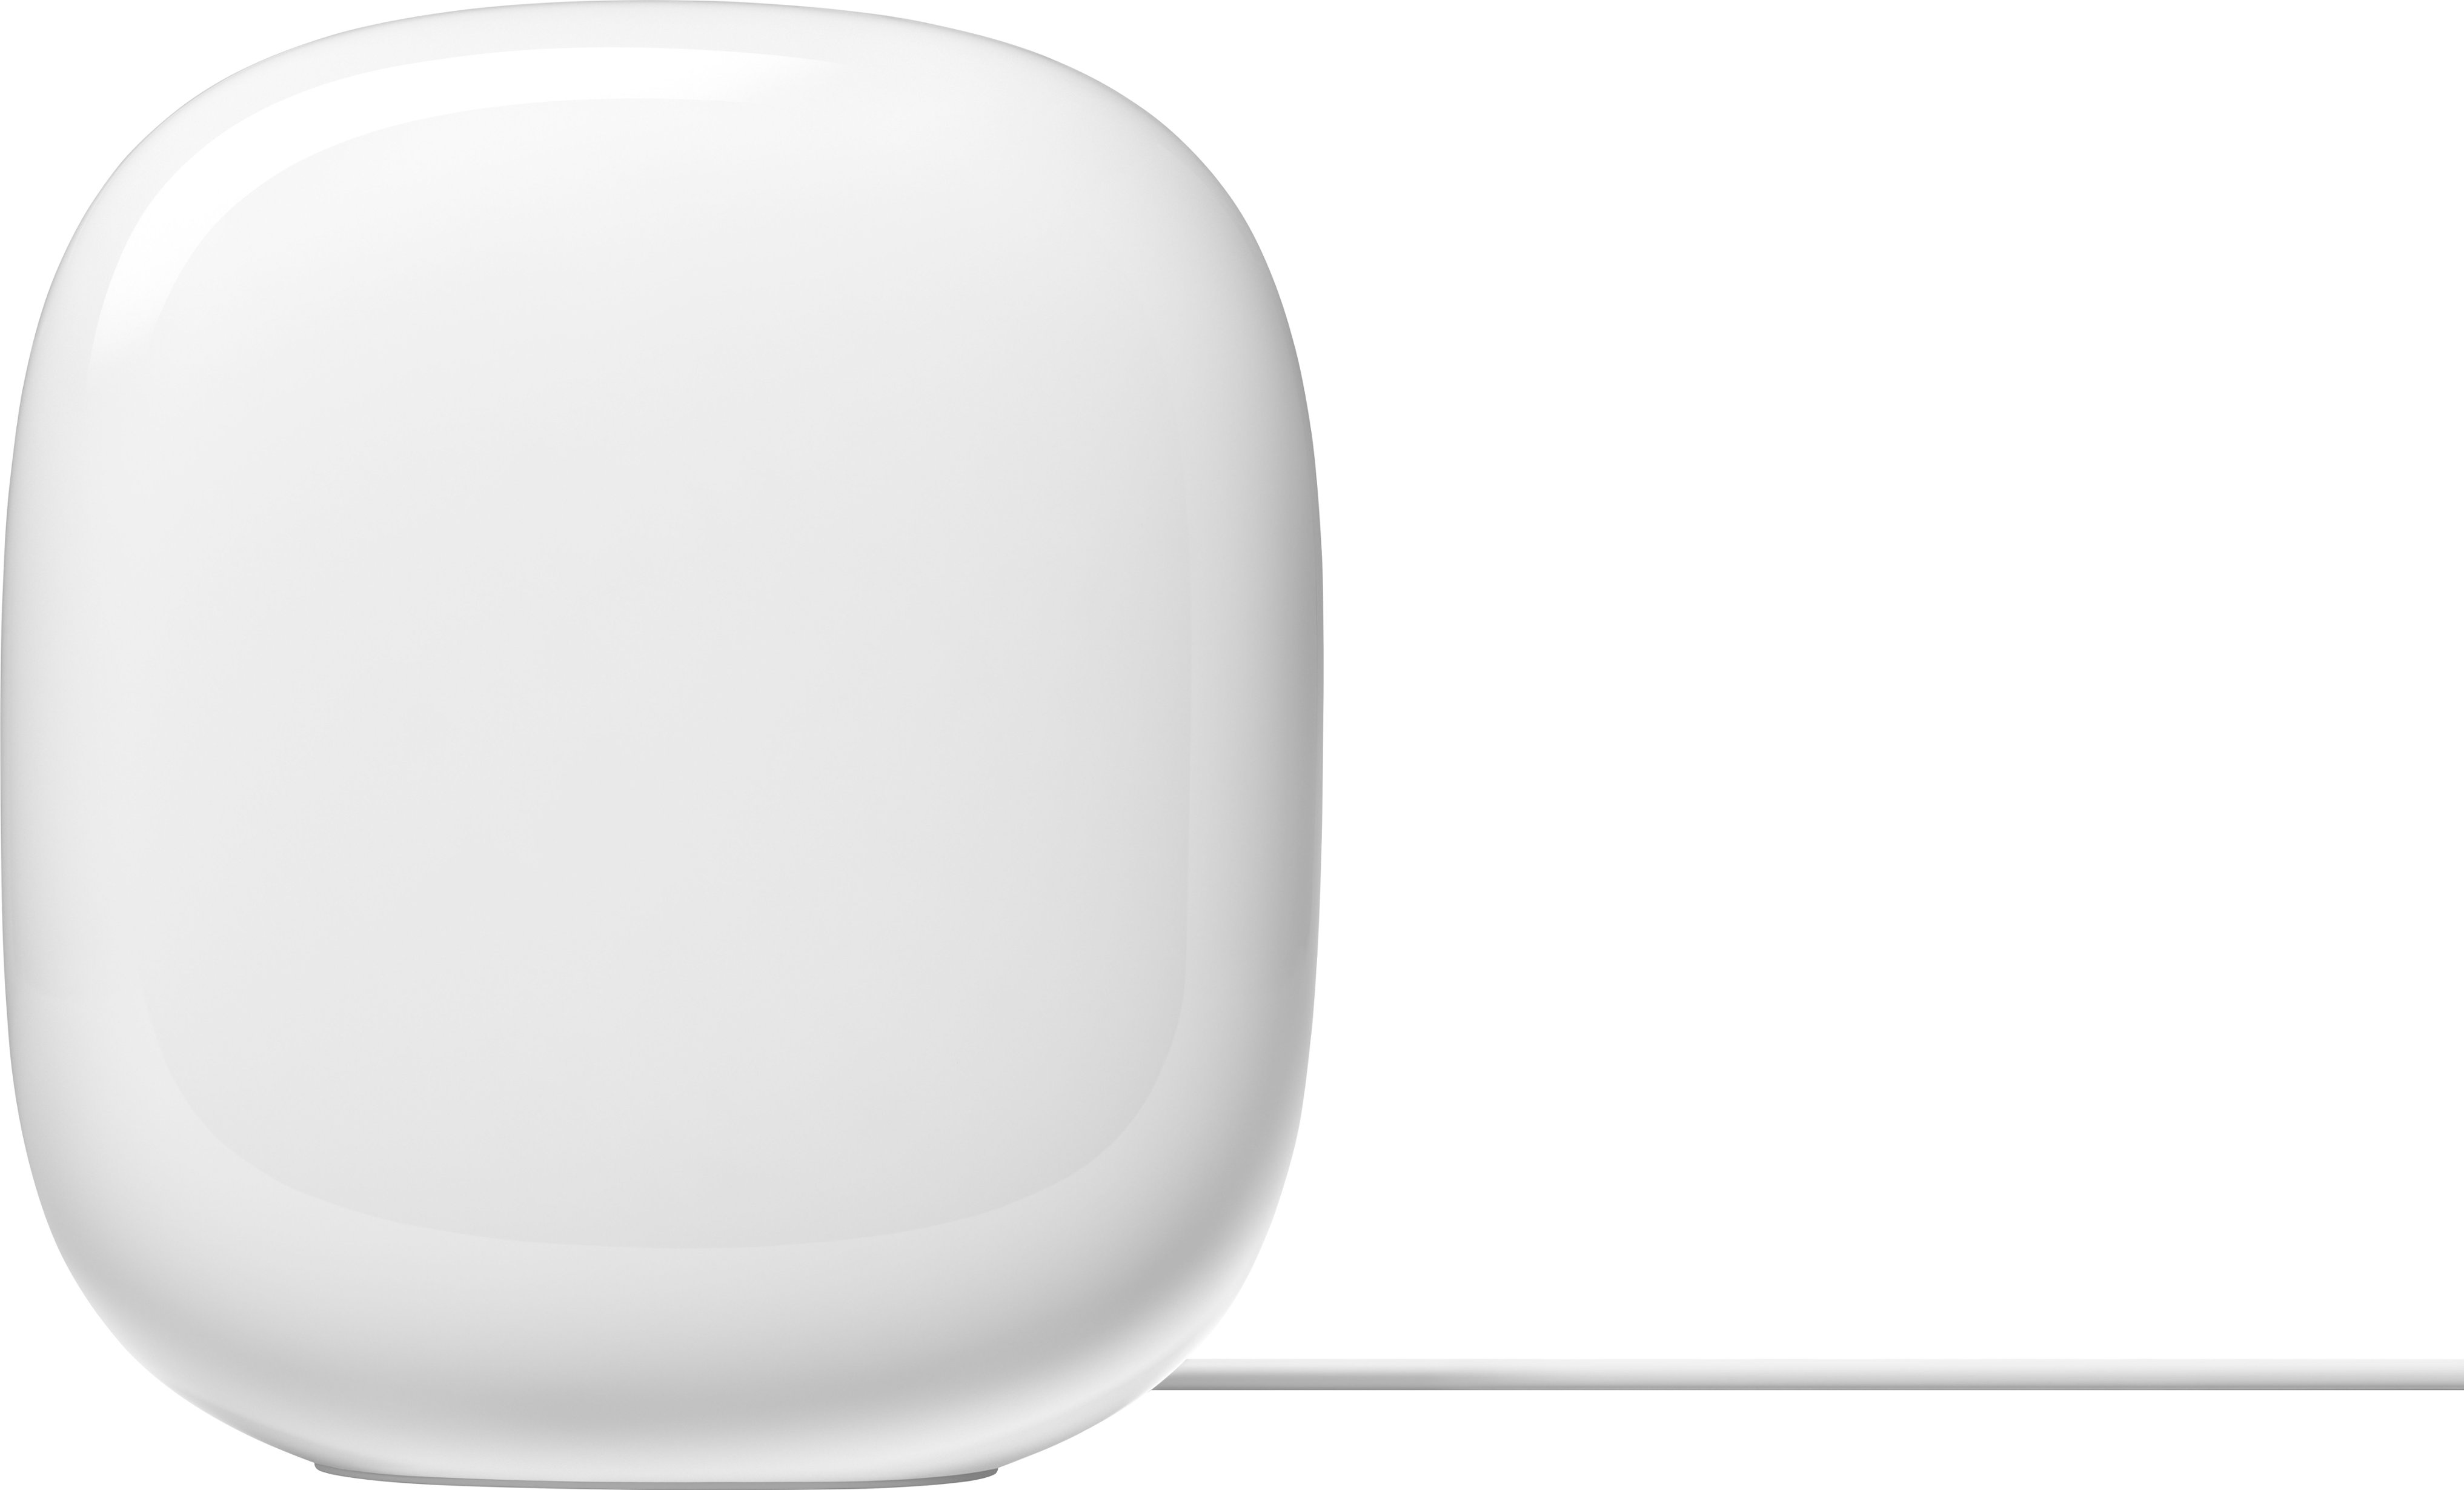 Best Buy: Google Wifi Mesh Router (AC1200) 1 pack White GA02430-US